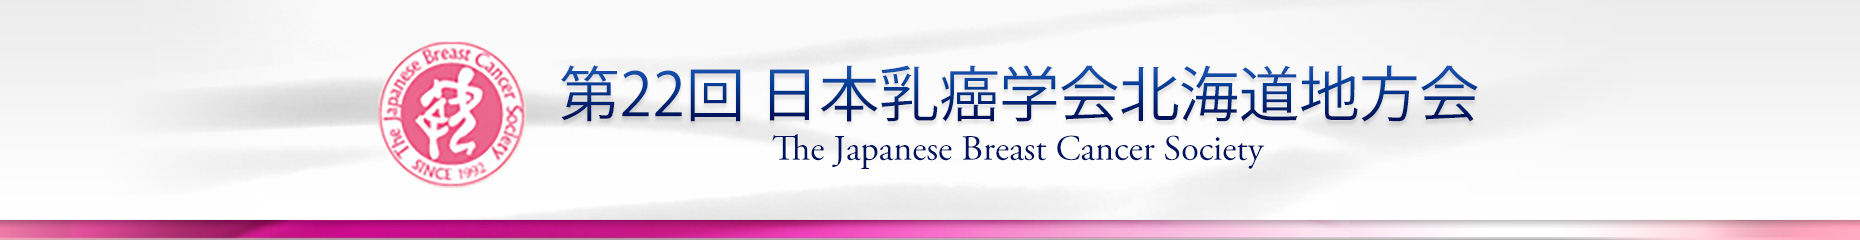 第22回日本乳癌学会北海道地方会